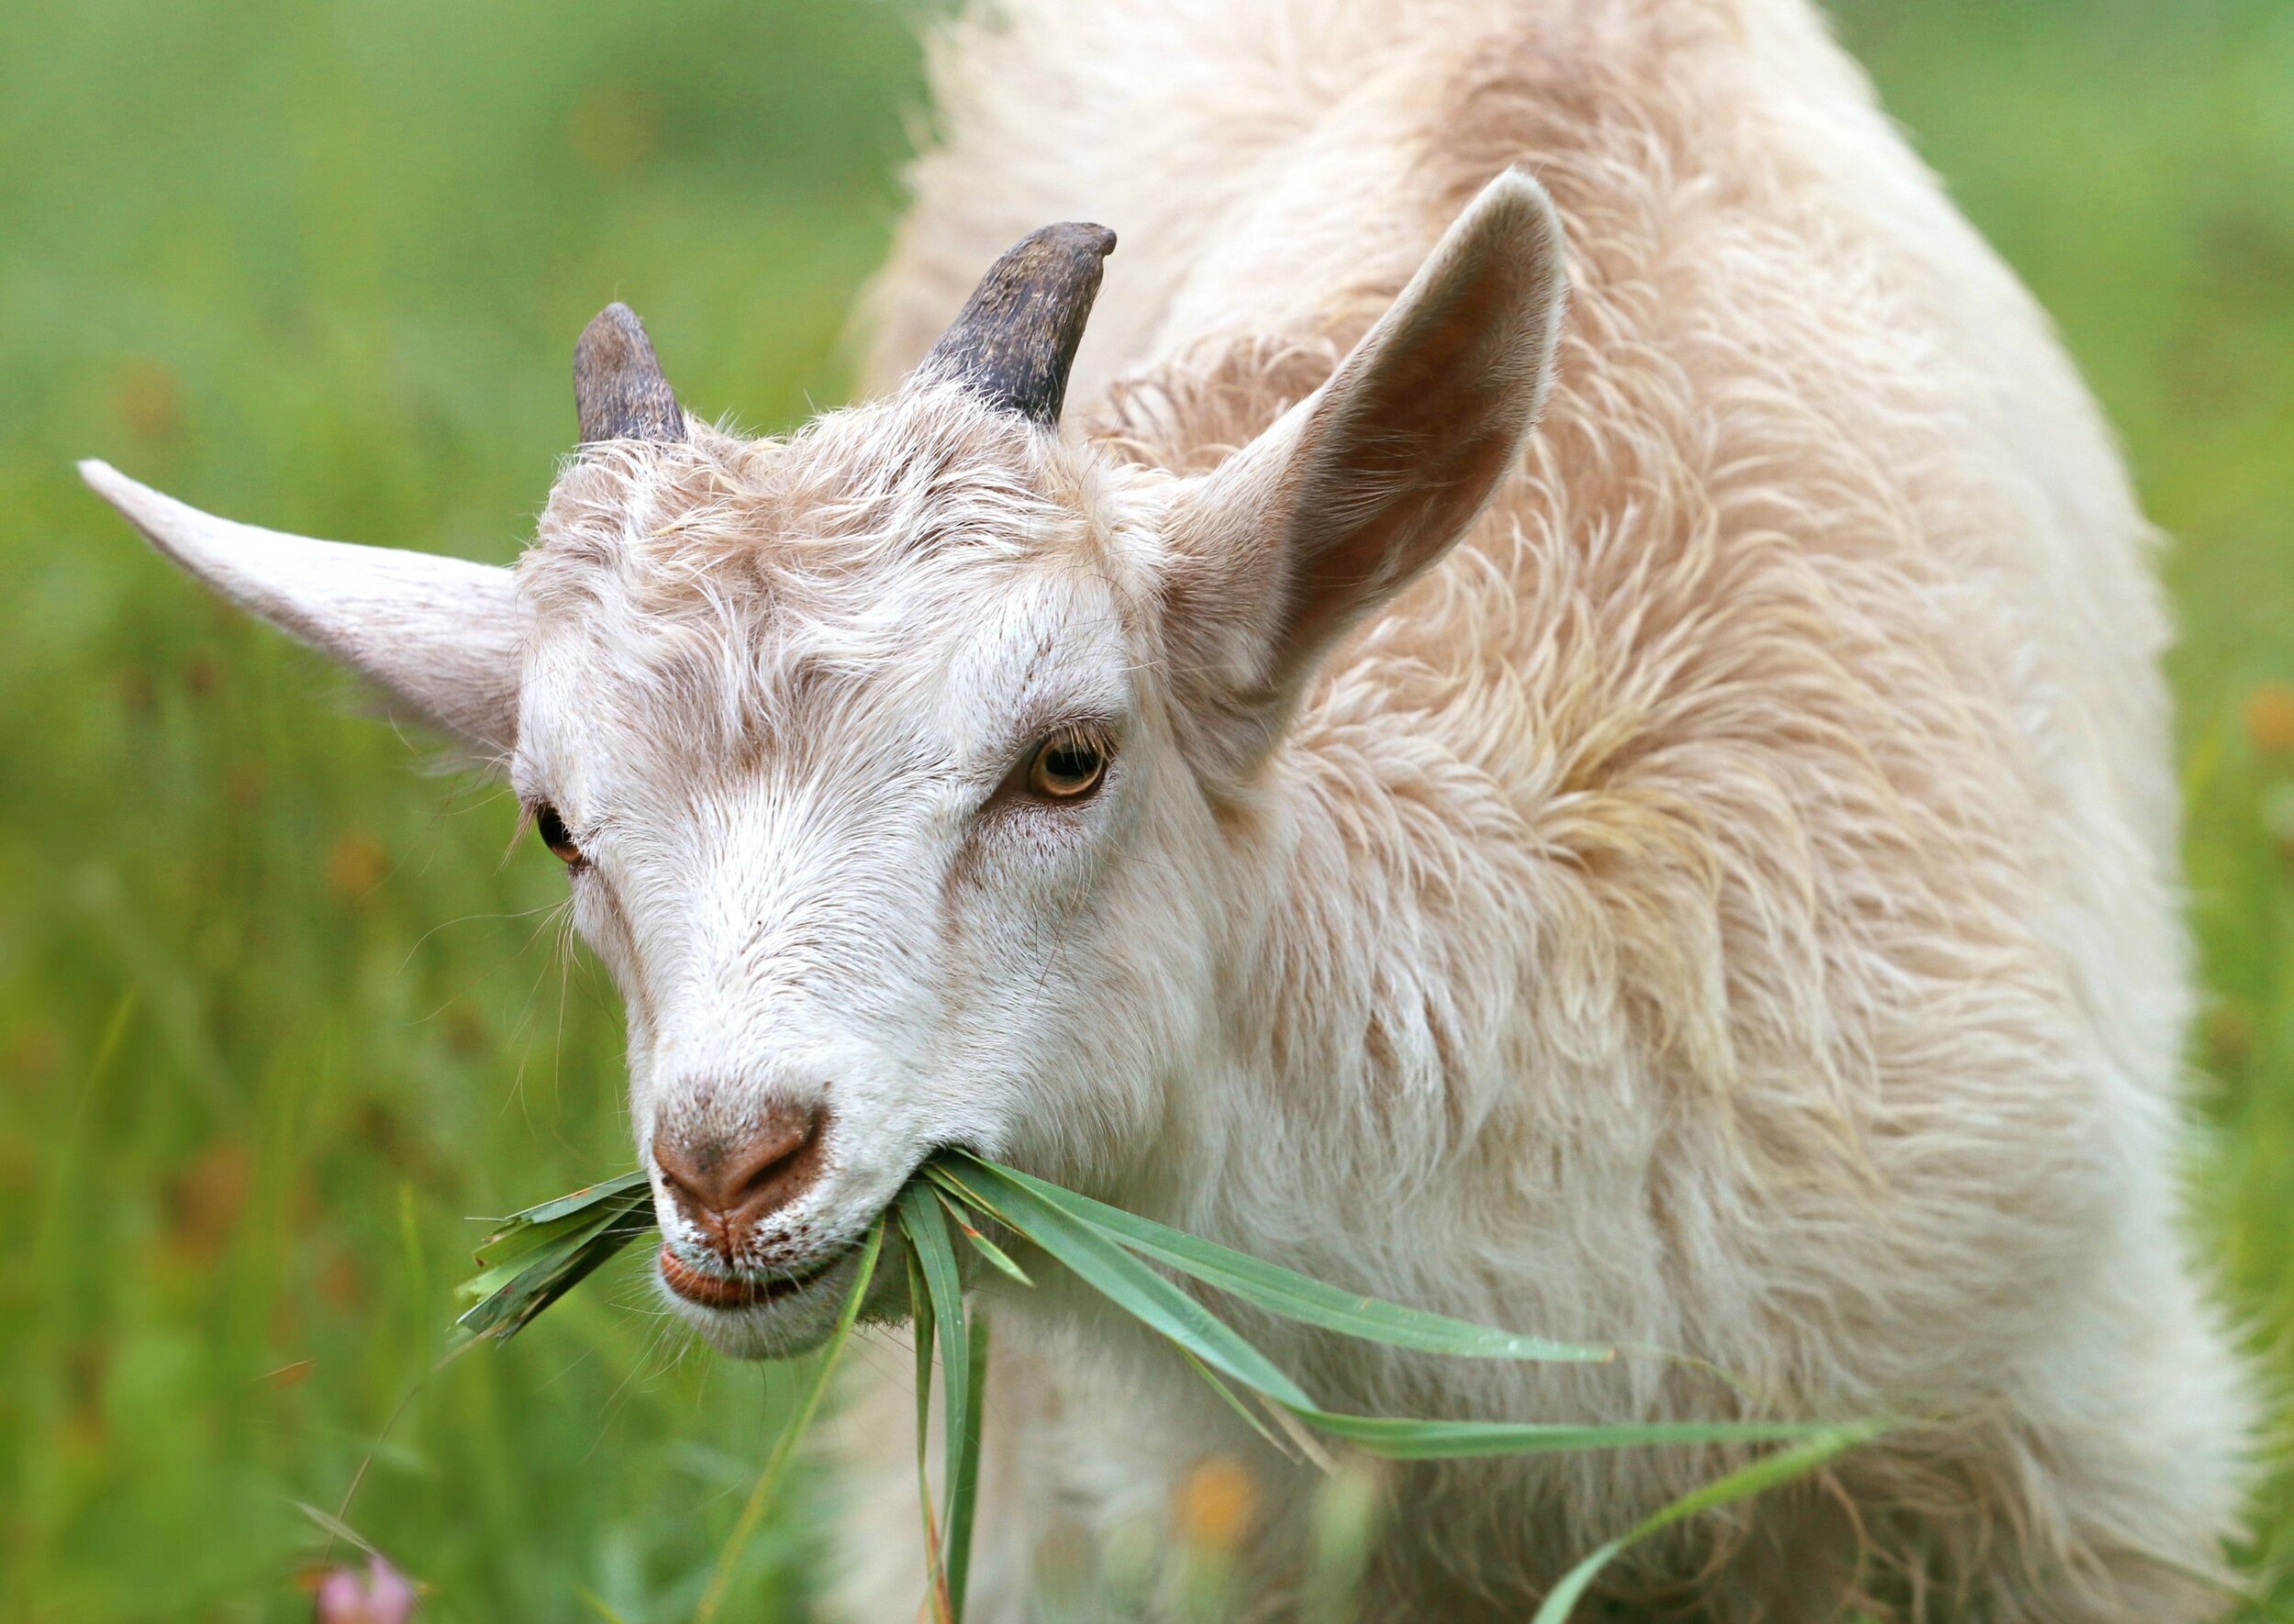 white-goat-eating-grass-during-daytime-144240.jpg